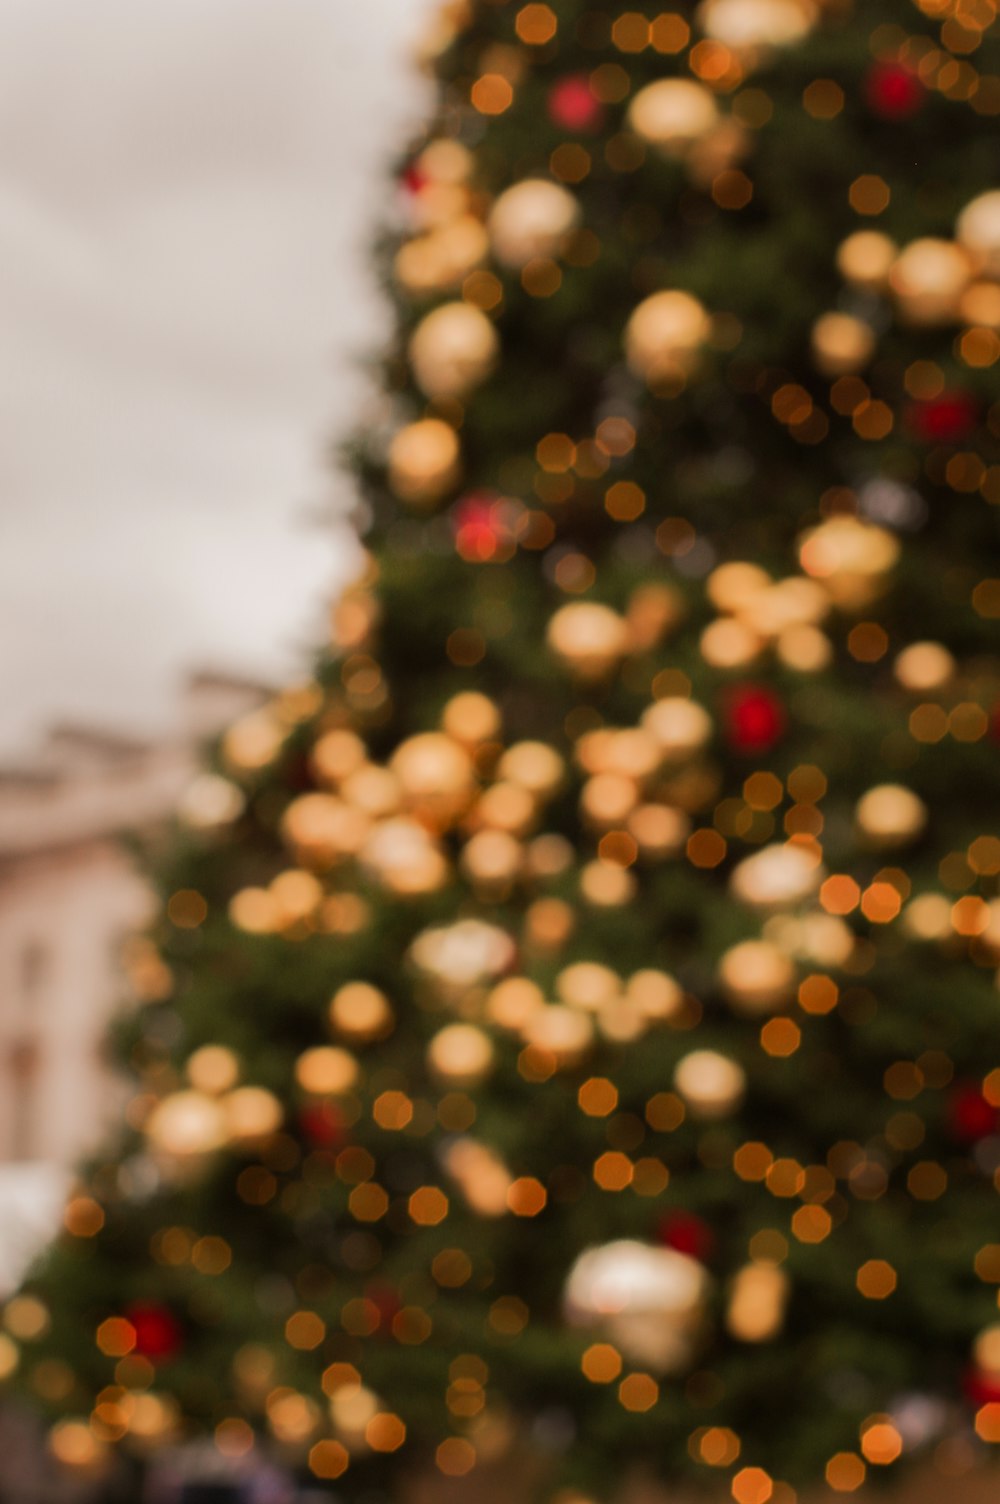 Un primo piano di un albero di Natale con le luci sullo sfondo